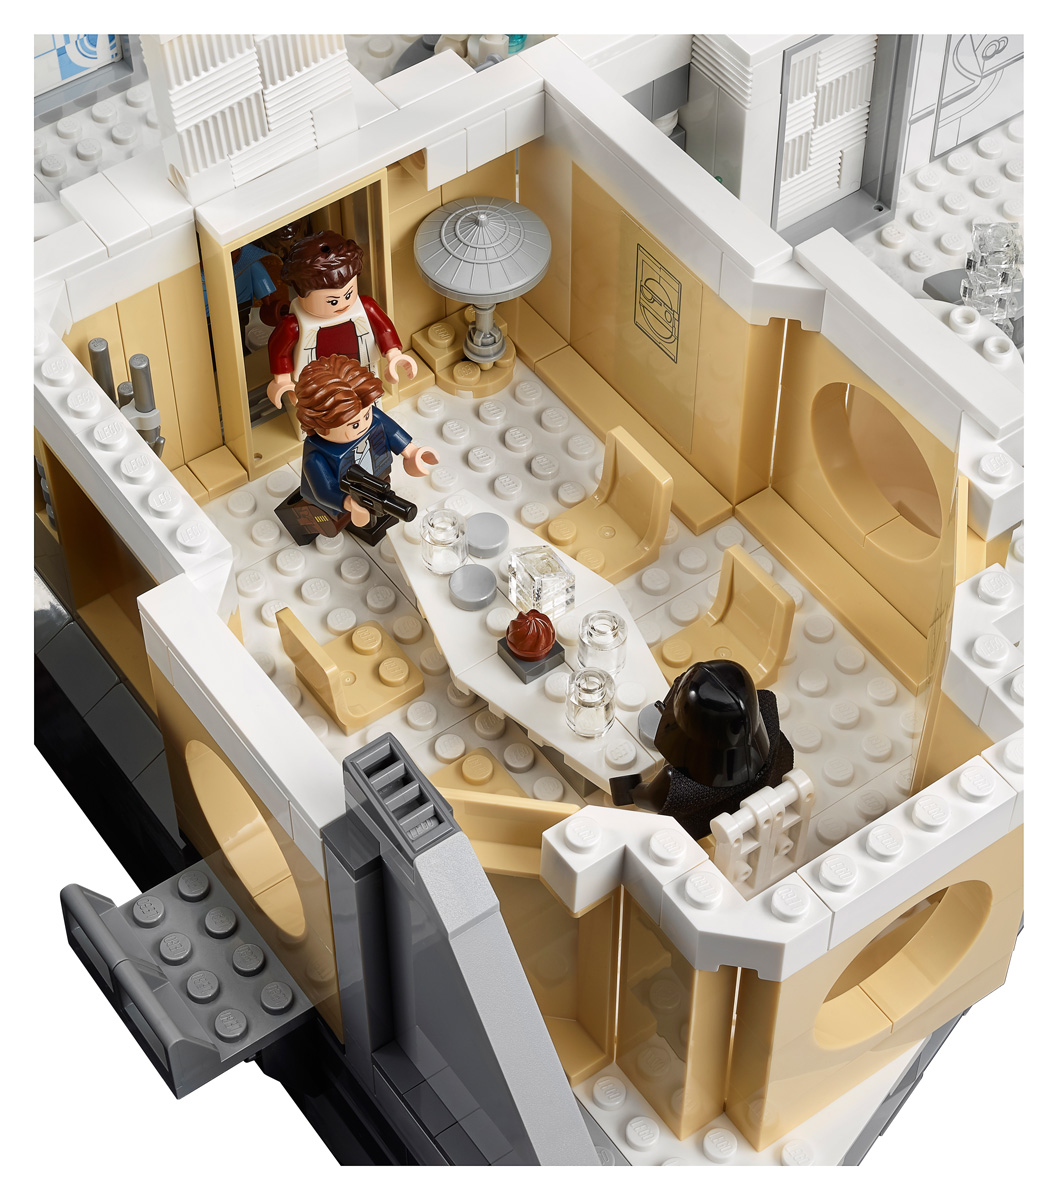 LEGO Star Wars: Betrayal at Cloud City